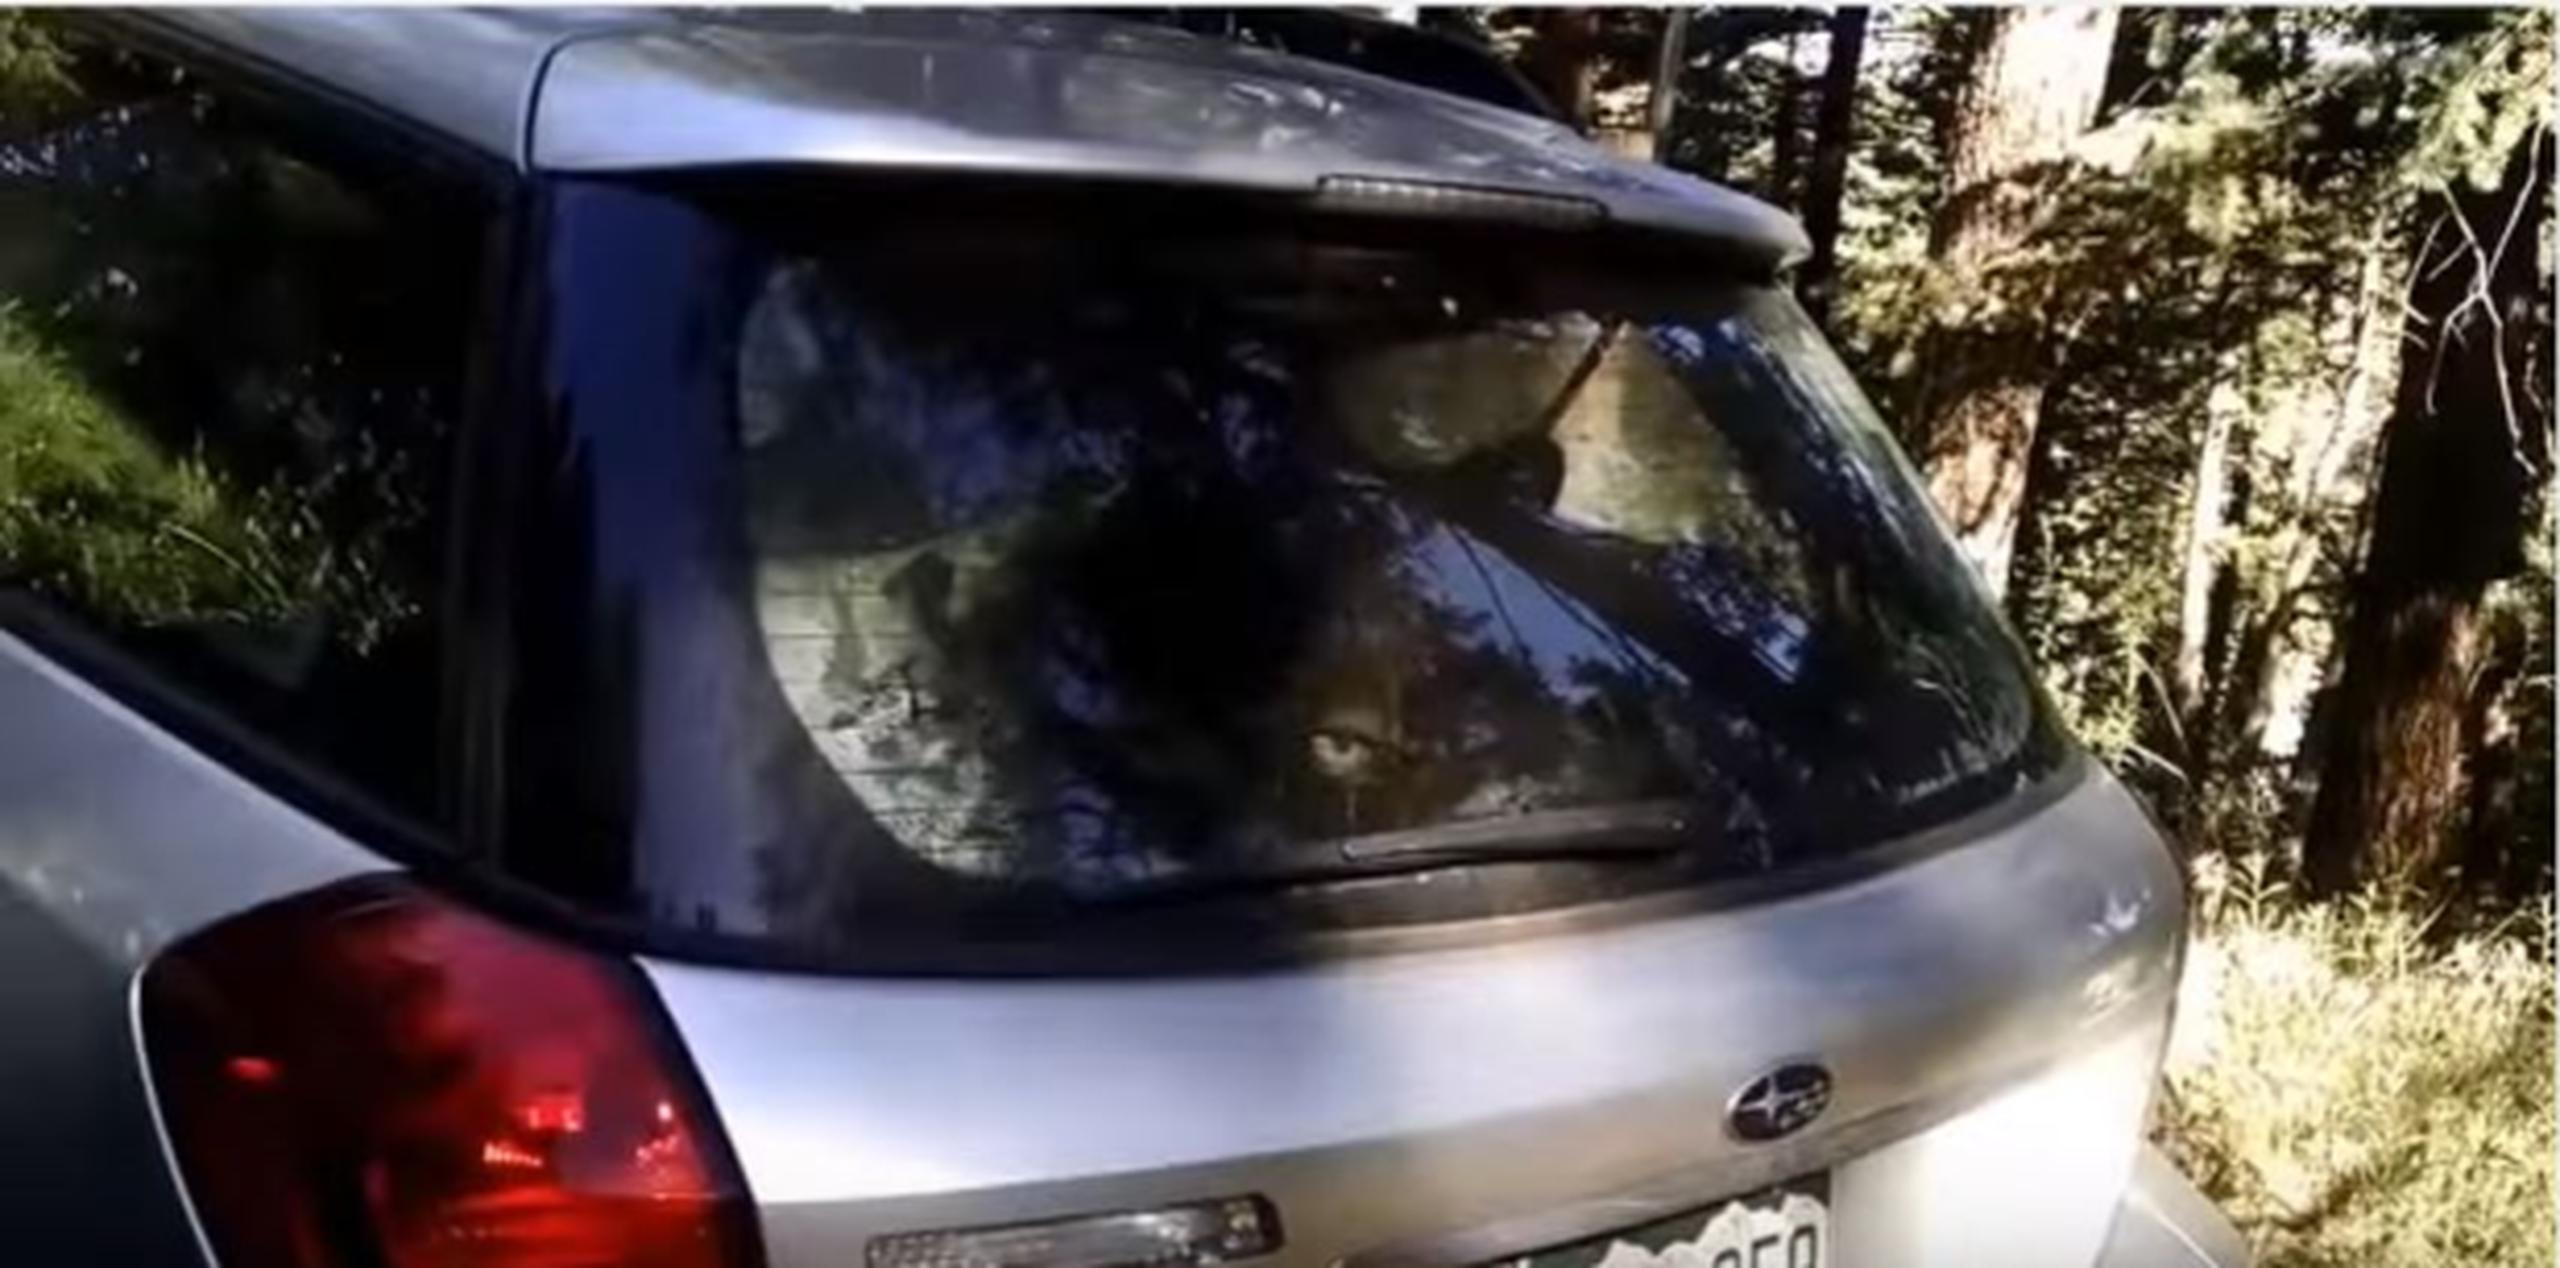 Nadie ha podido explicarse cómo el oso logró entrar al vehículo, cuyo interior dejó destrozado. (Captura)